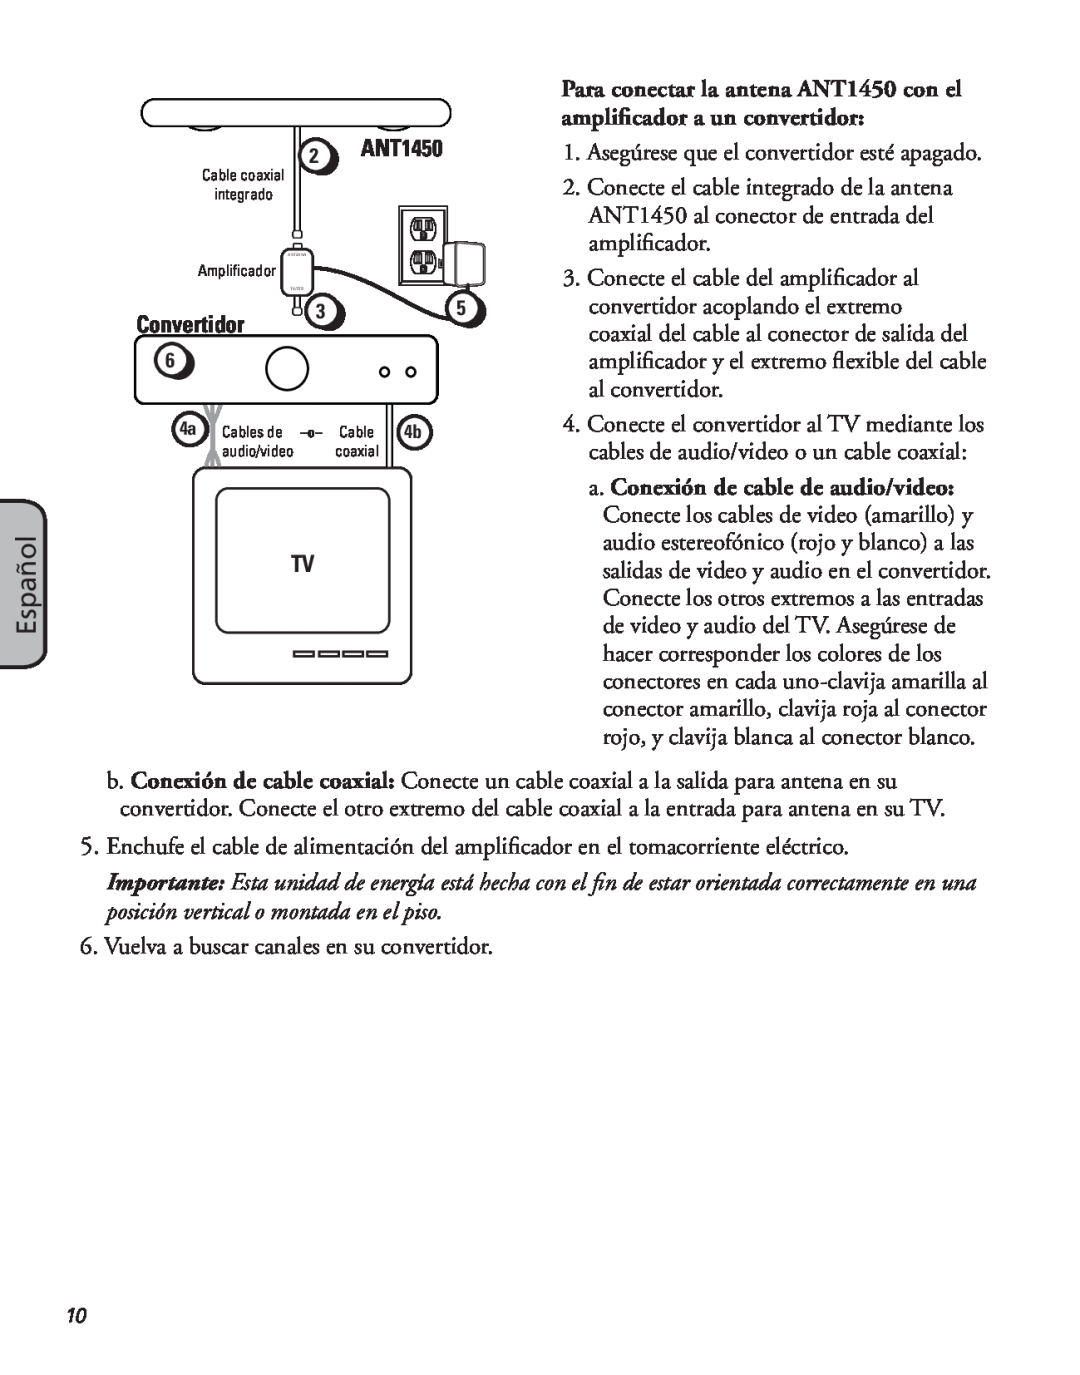 RCA manual Español, Convertidor, Para conectar la antena ANT1450 con el amplificador a un convertidor 